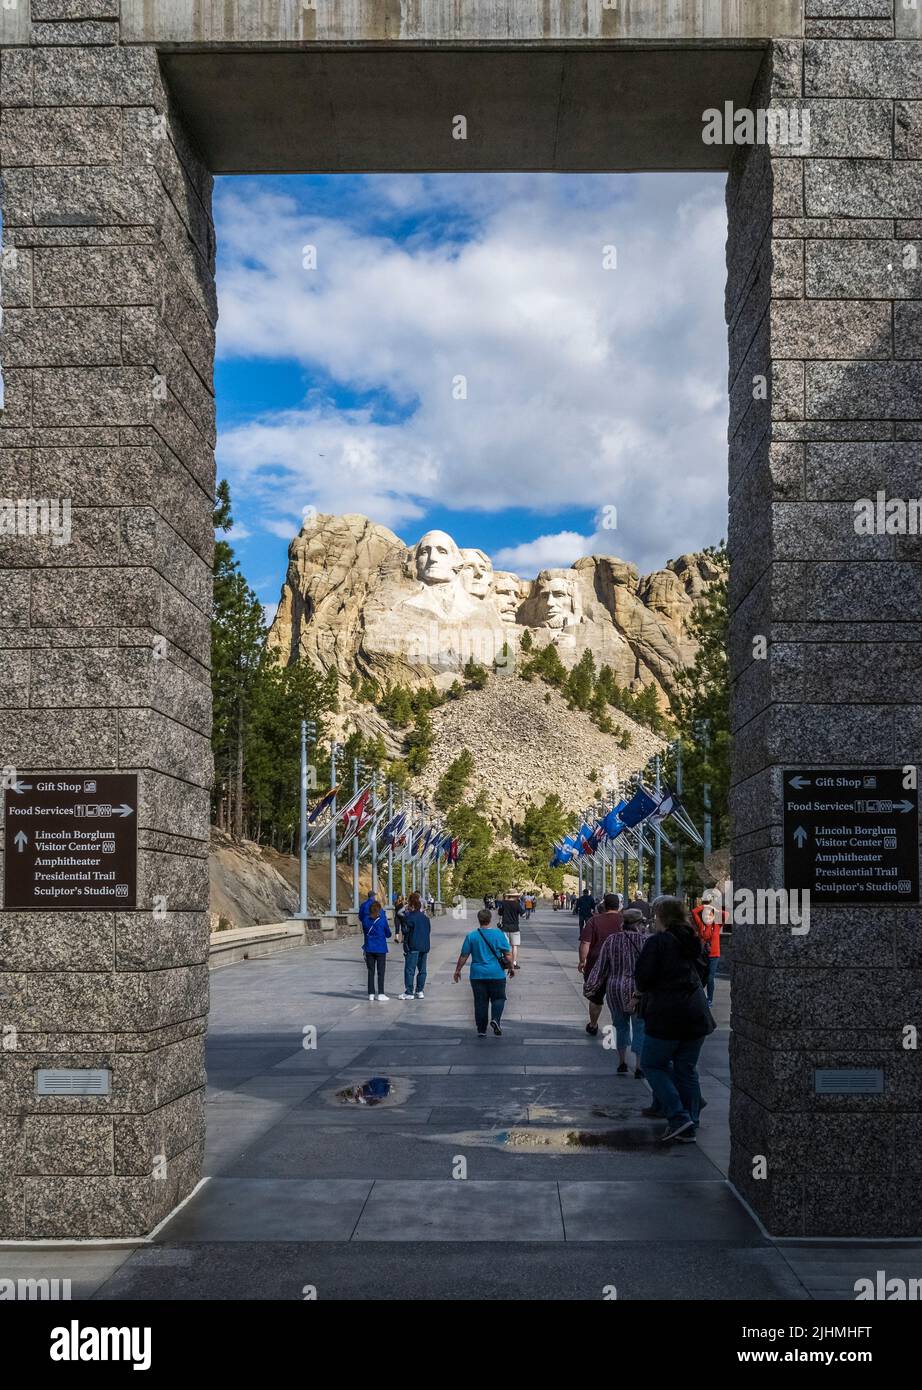 Mémorial national de Mount Rushmore dans les Black Hills du Dakota du Sud des États-Unis Banque D'Images